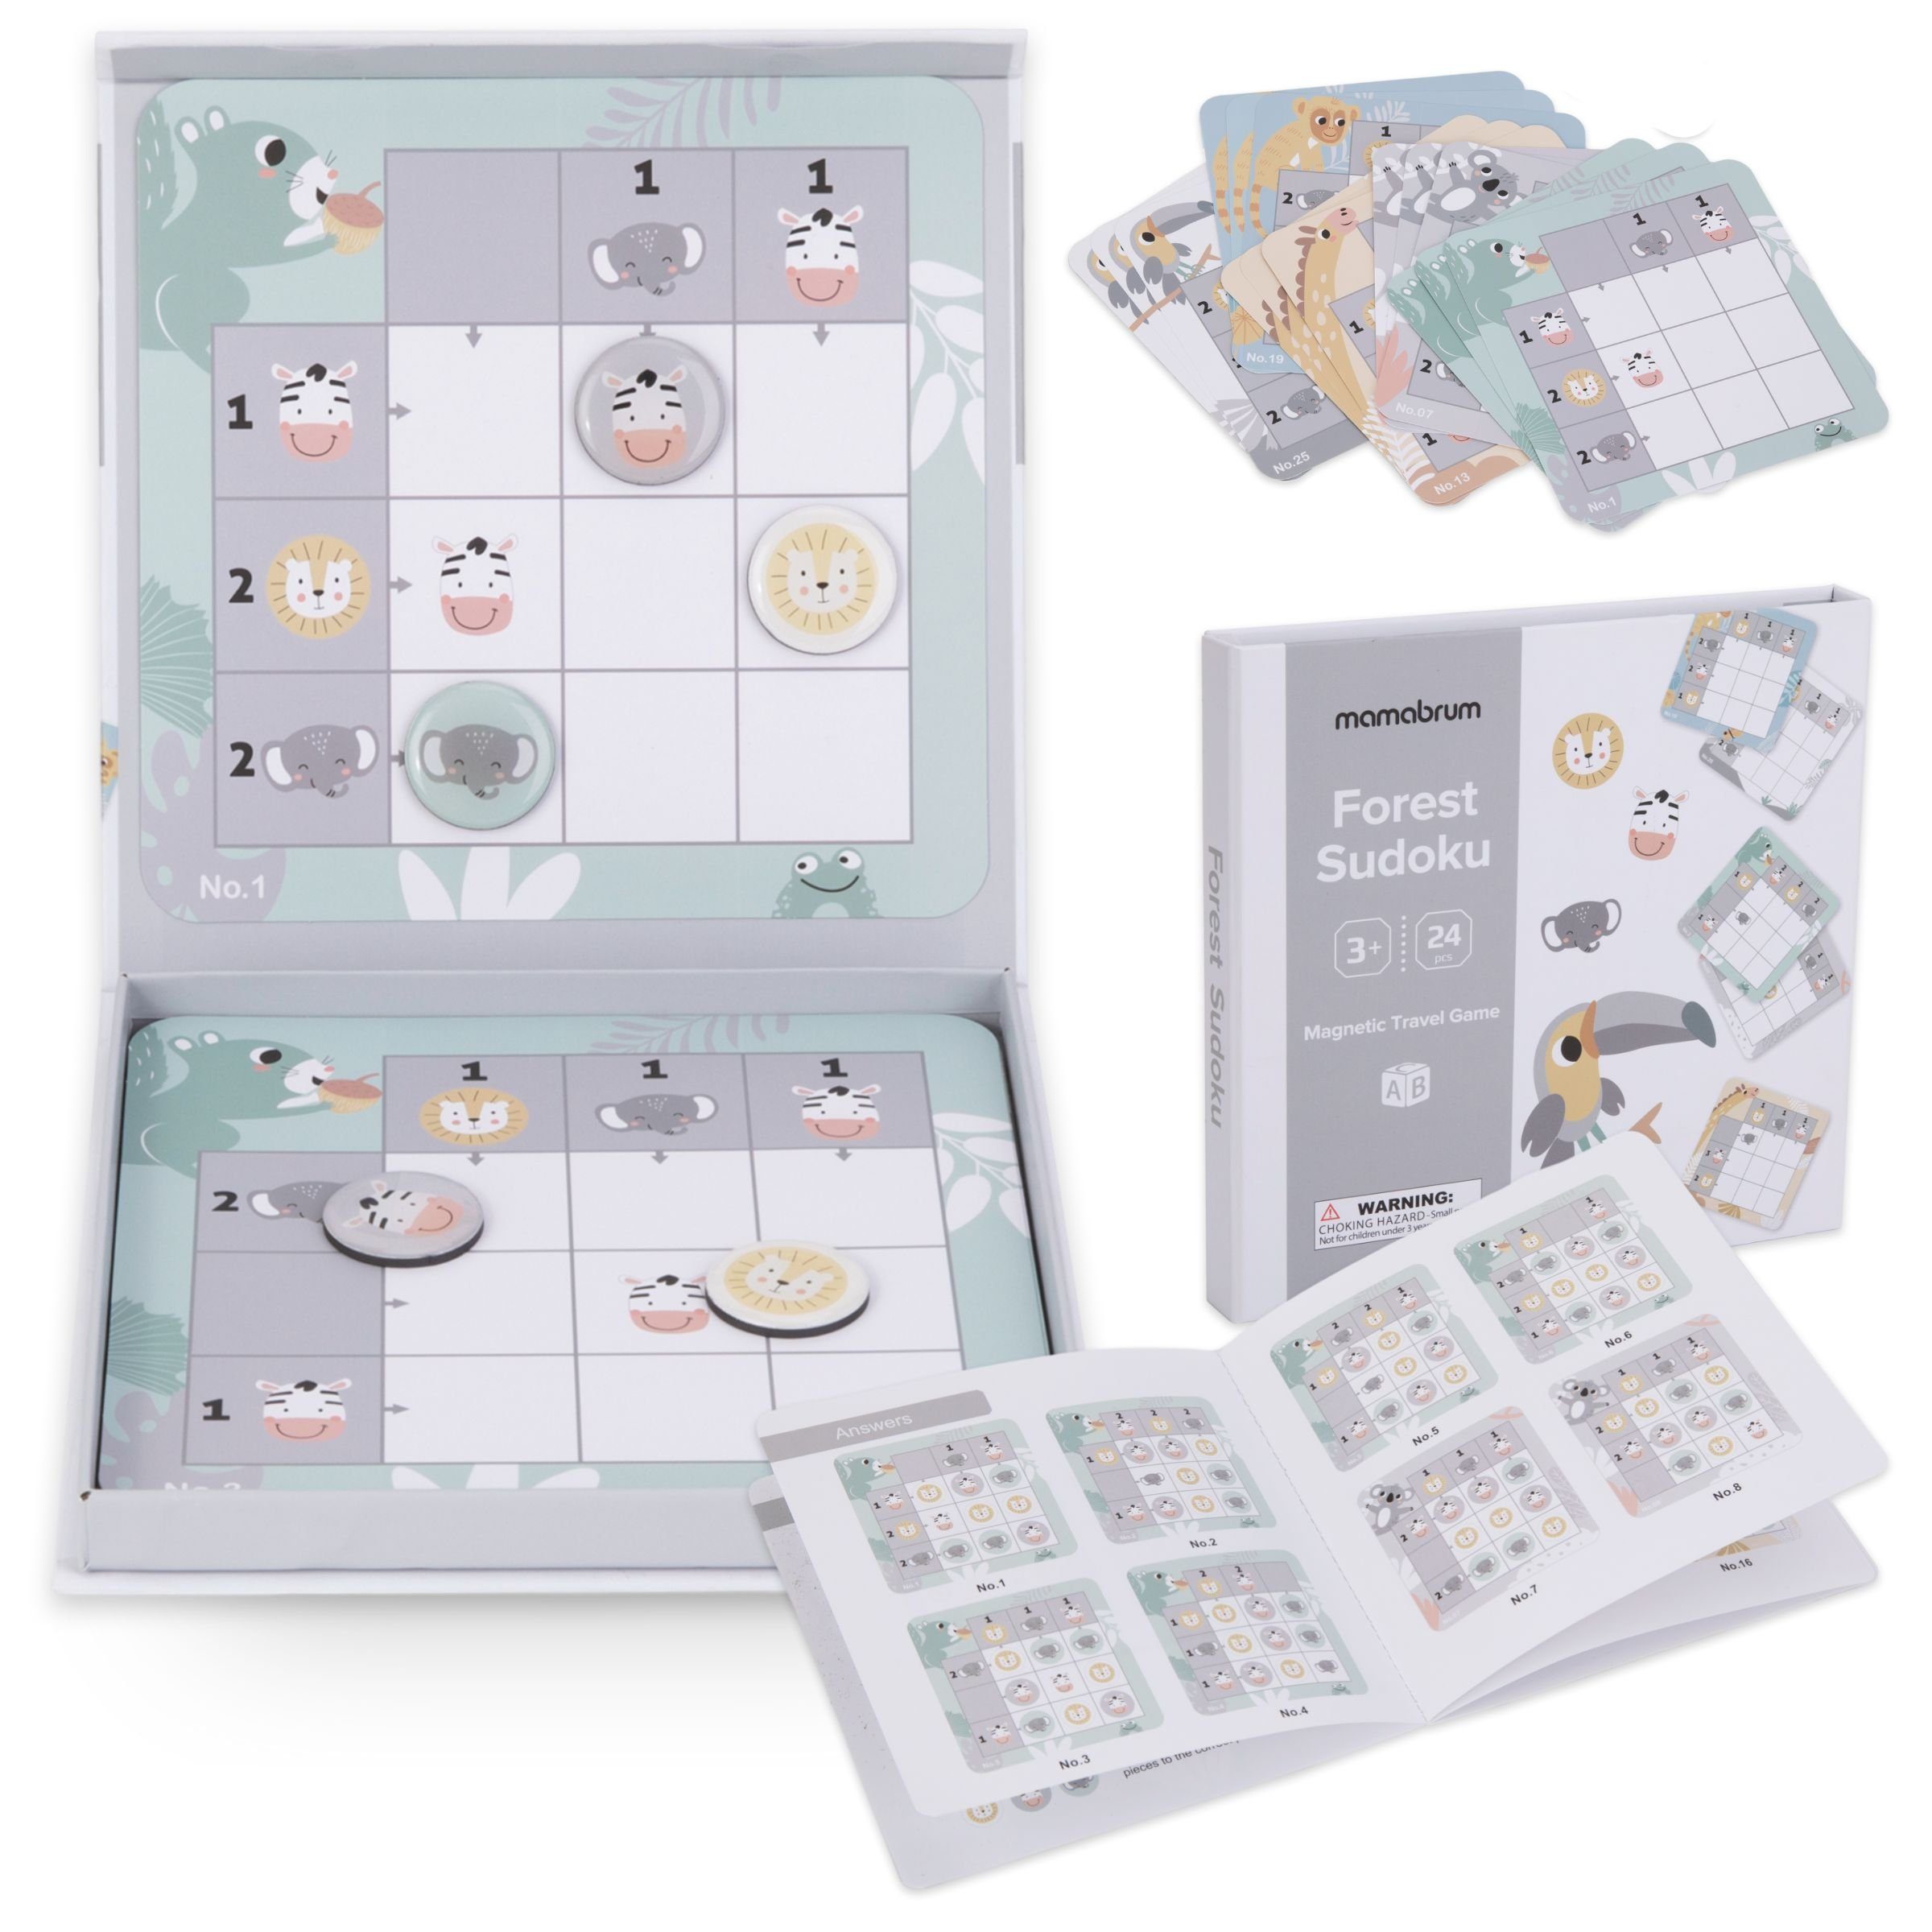 Mamabrum Puzzle-Sortierschale Magnetisches Reisespiel - Sudoku für Kinder | Sortierschalen